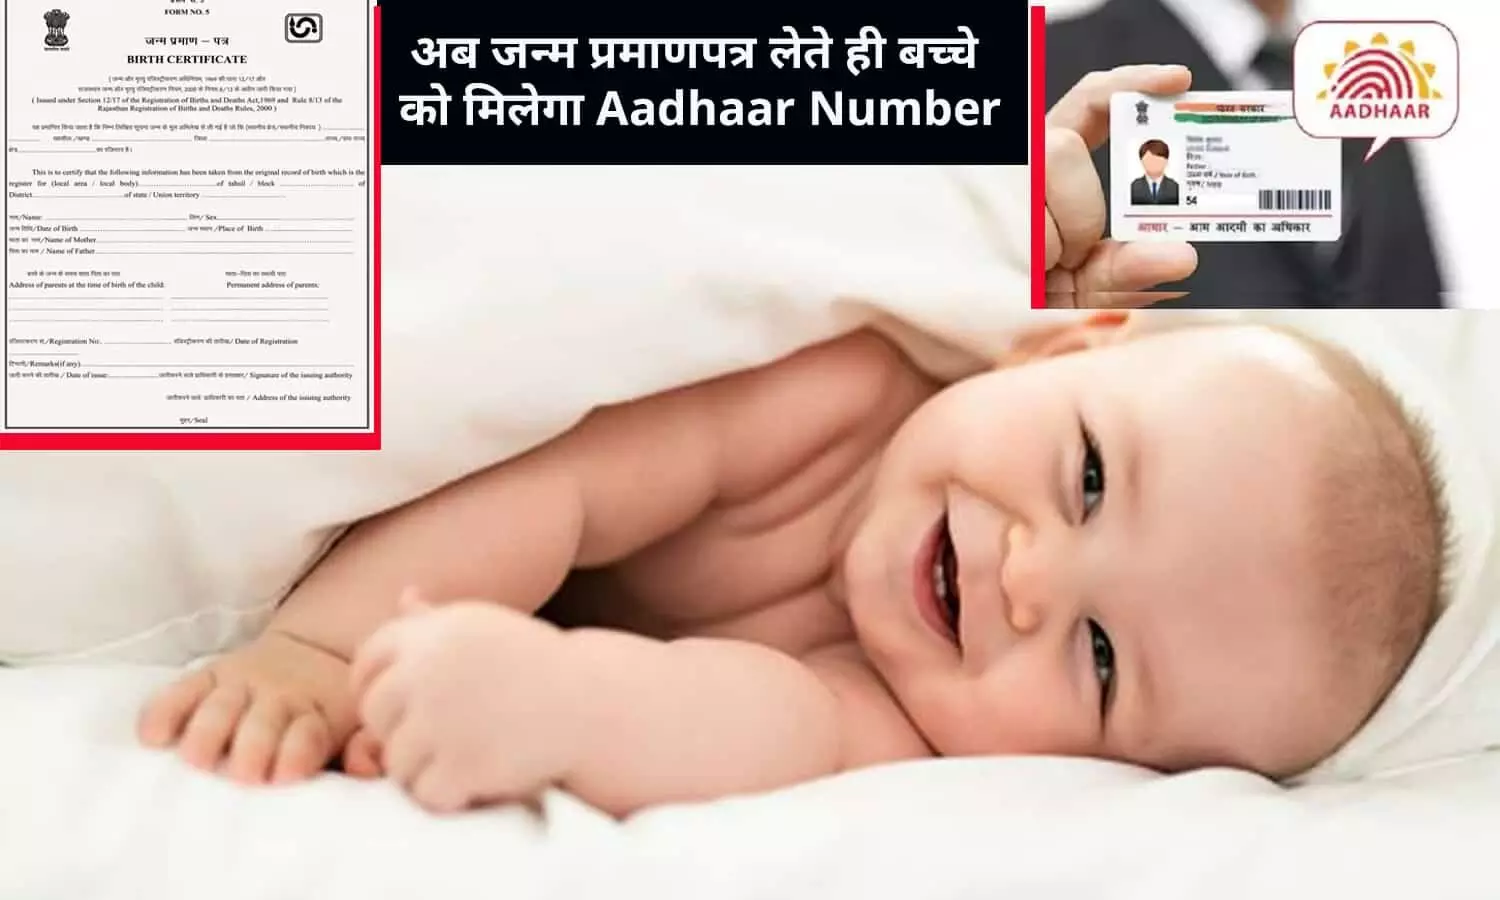 खुशखबरी! अब जन्म प्रमाणपत्र लेते ही बच्चे को मिलेगा Aadhaar Number